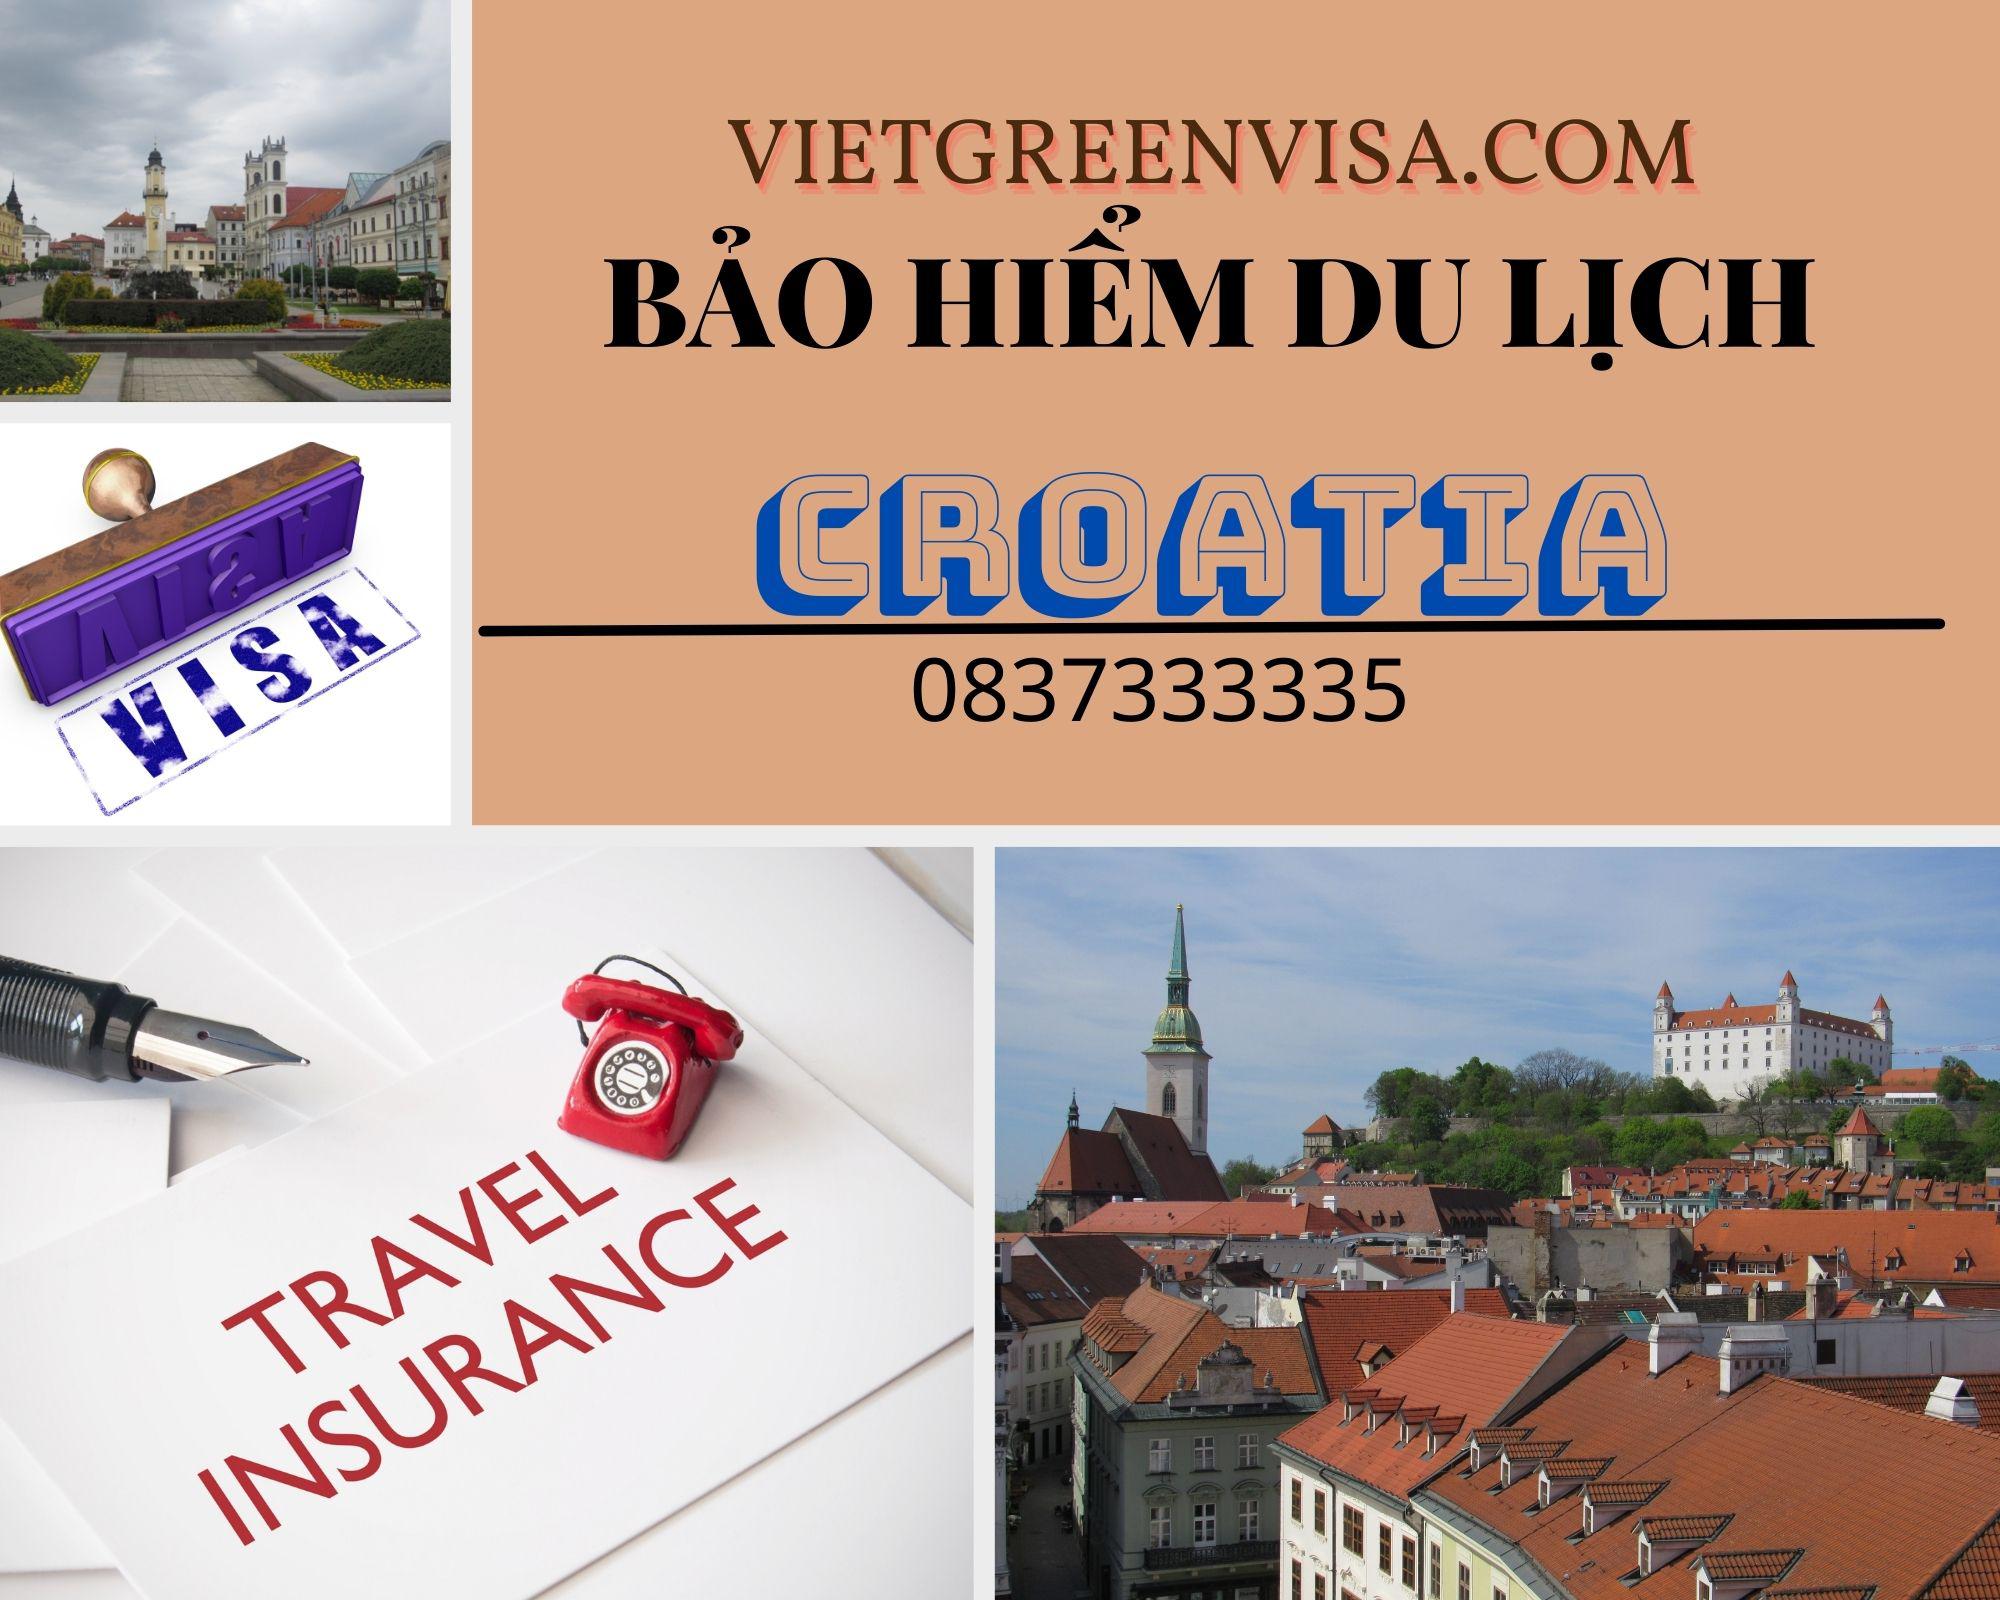 Hỗ trợ làm bảo hiểm du lịch đi Croatia giá rẻ nhất